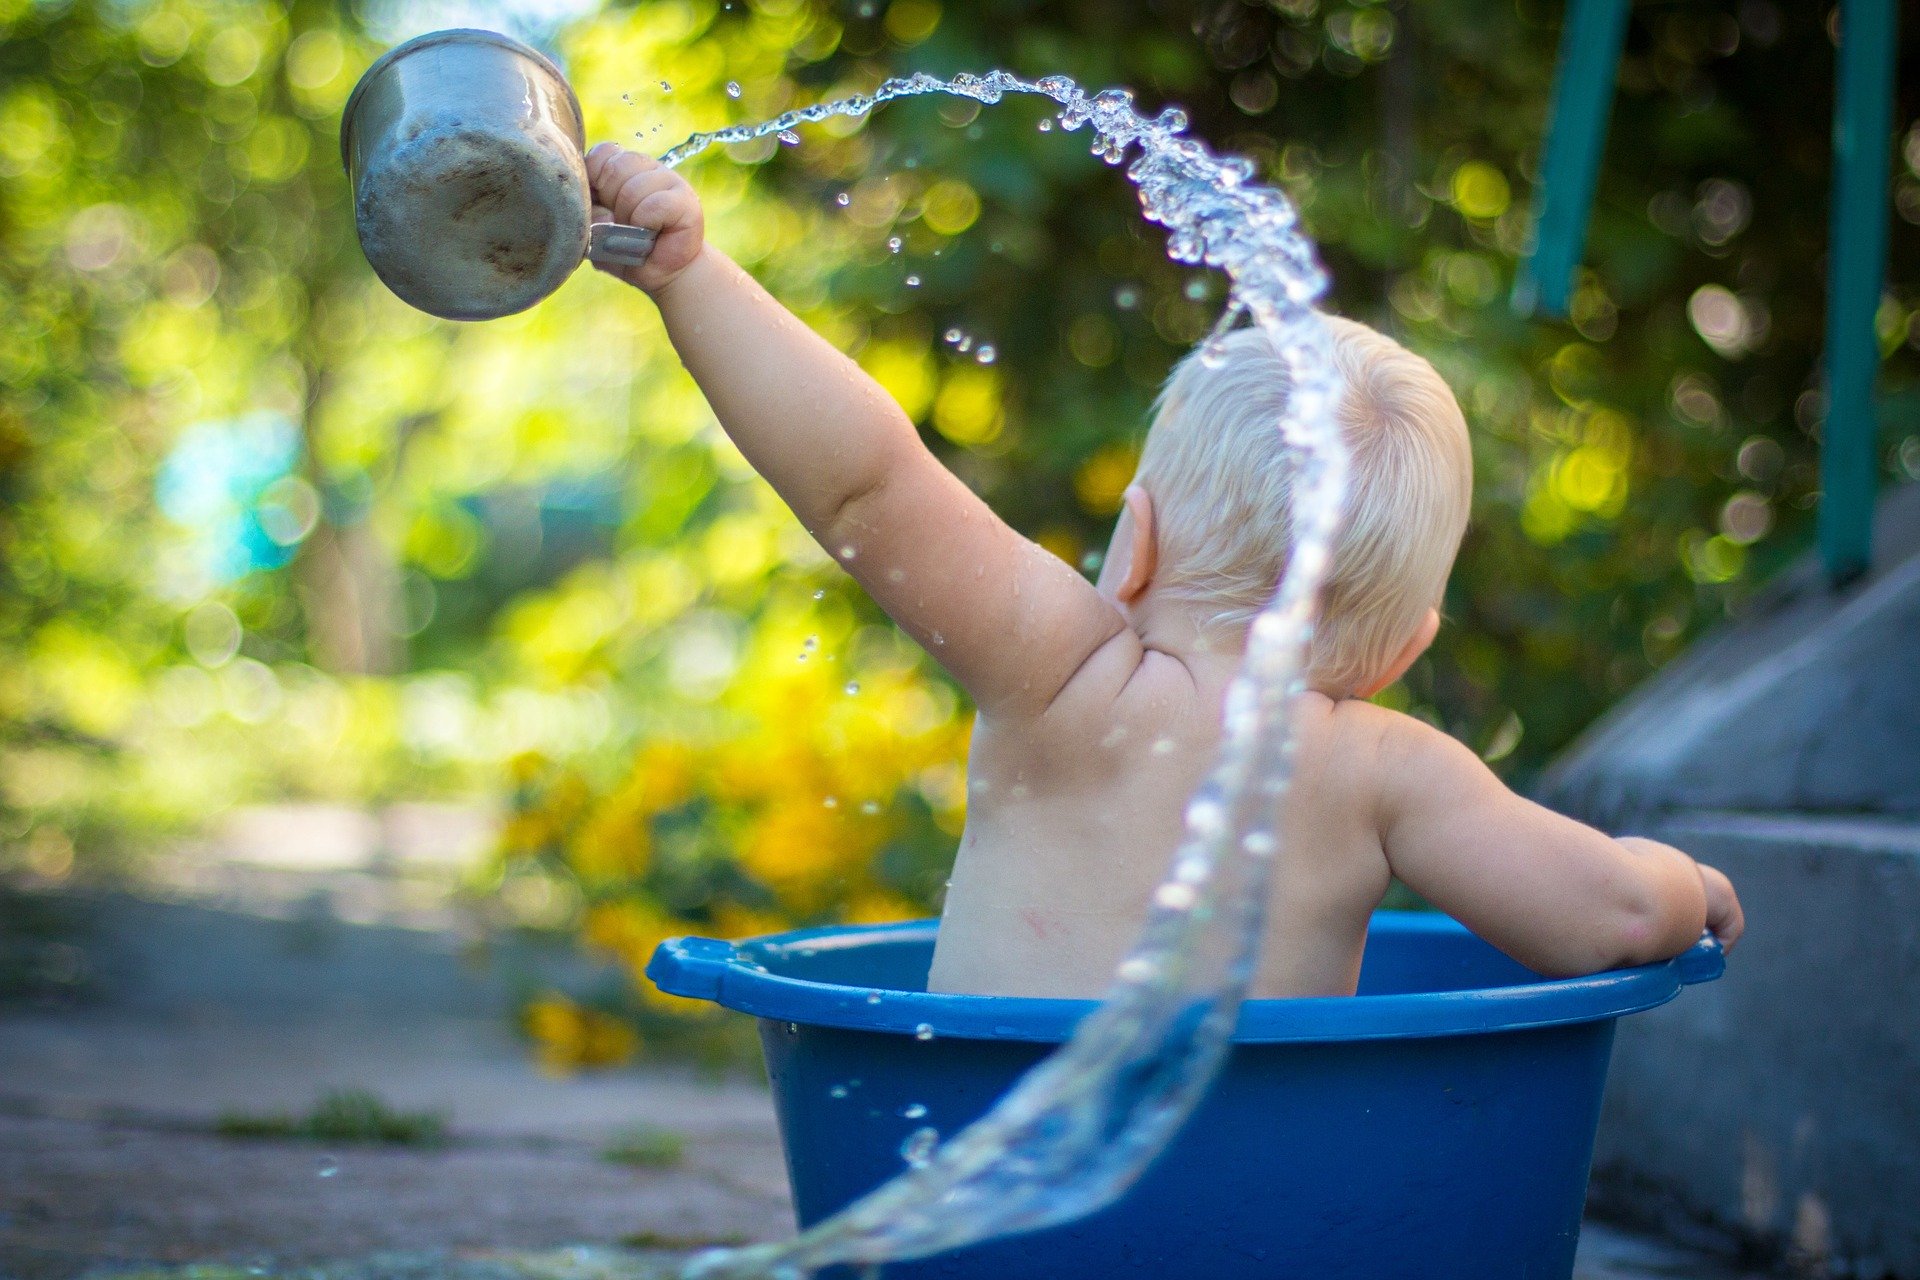 Le bain libre de bébé : Tout ce que vous devez savoir - Everykid